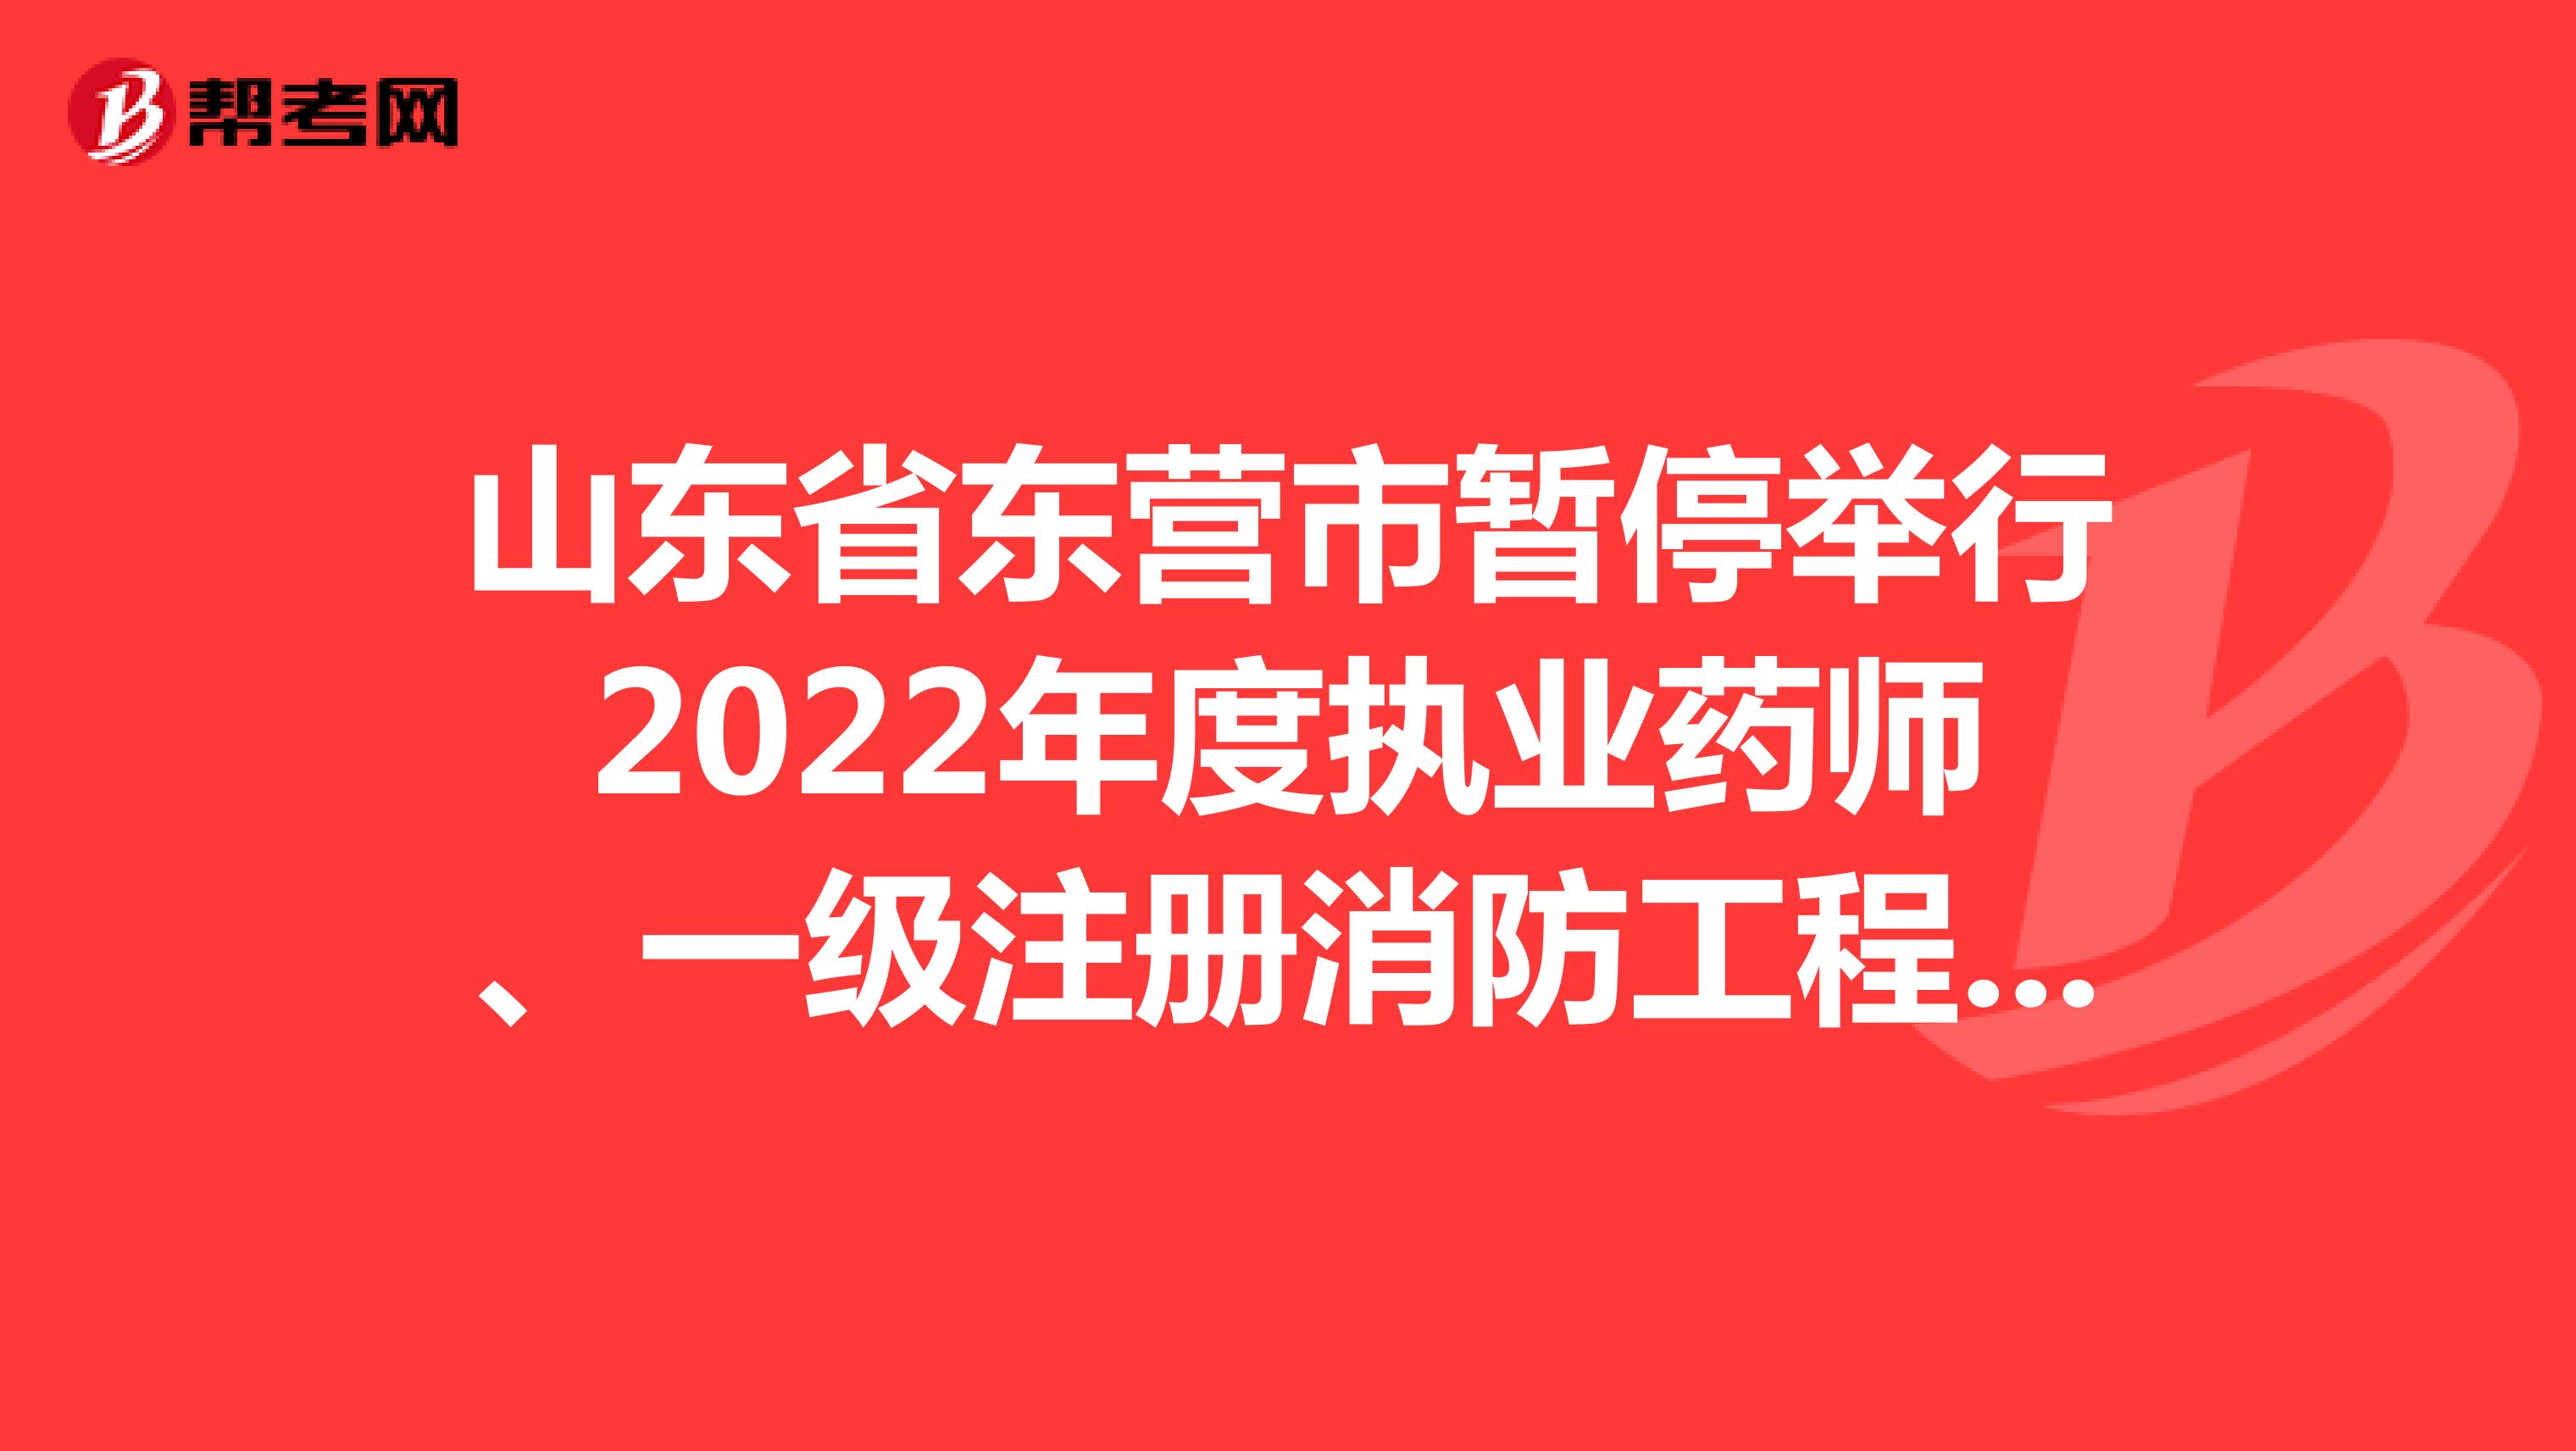 山东省东营市暂停举行2022年度执业药师、一级注册消防工程师、翻译、计算机技术与软件资格考试的公告